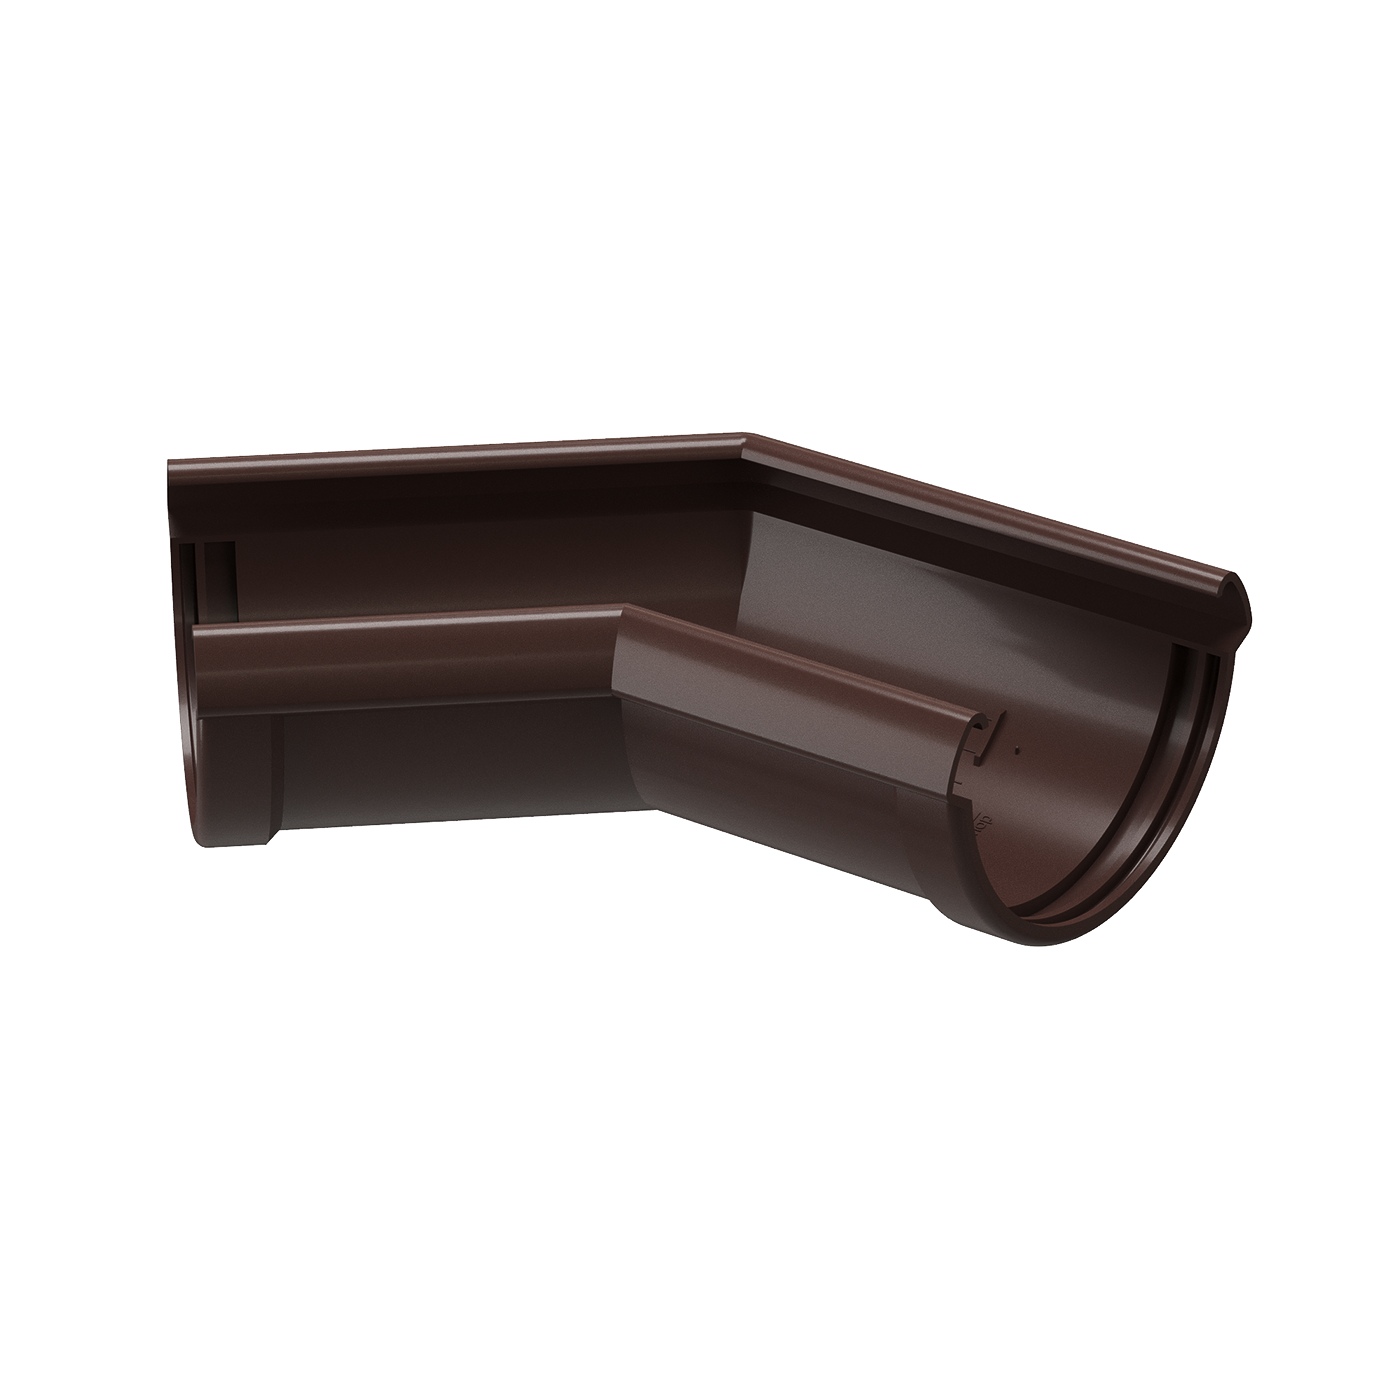 Угловой элемент 135° Docke LUX (Германия) Коричневый  (Шоколад)